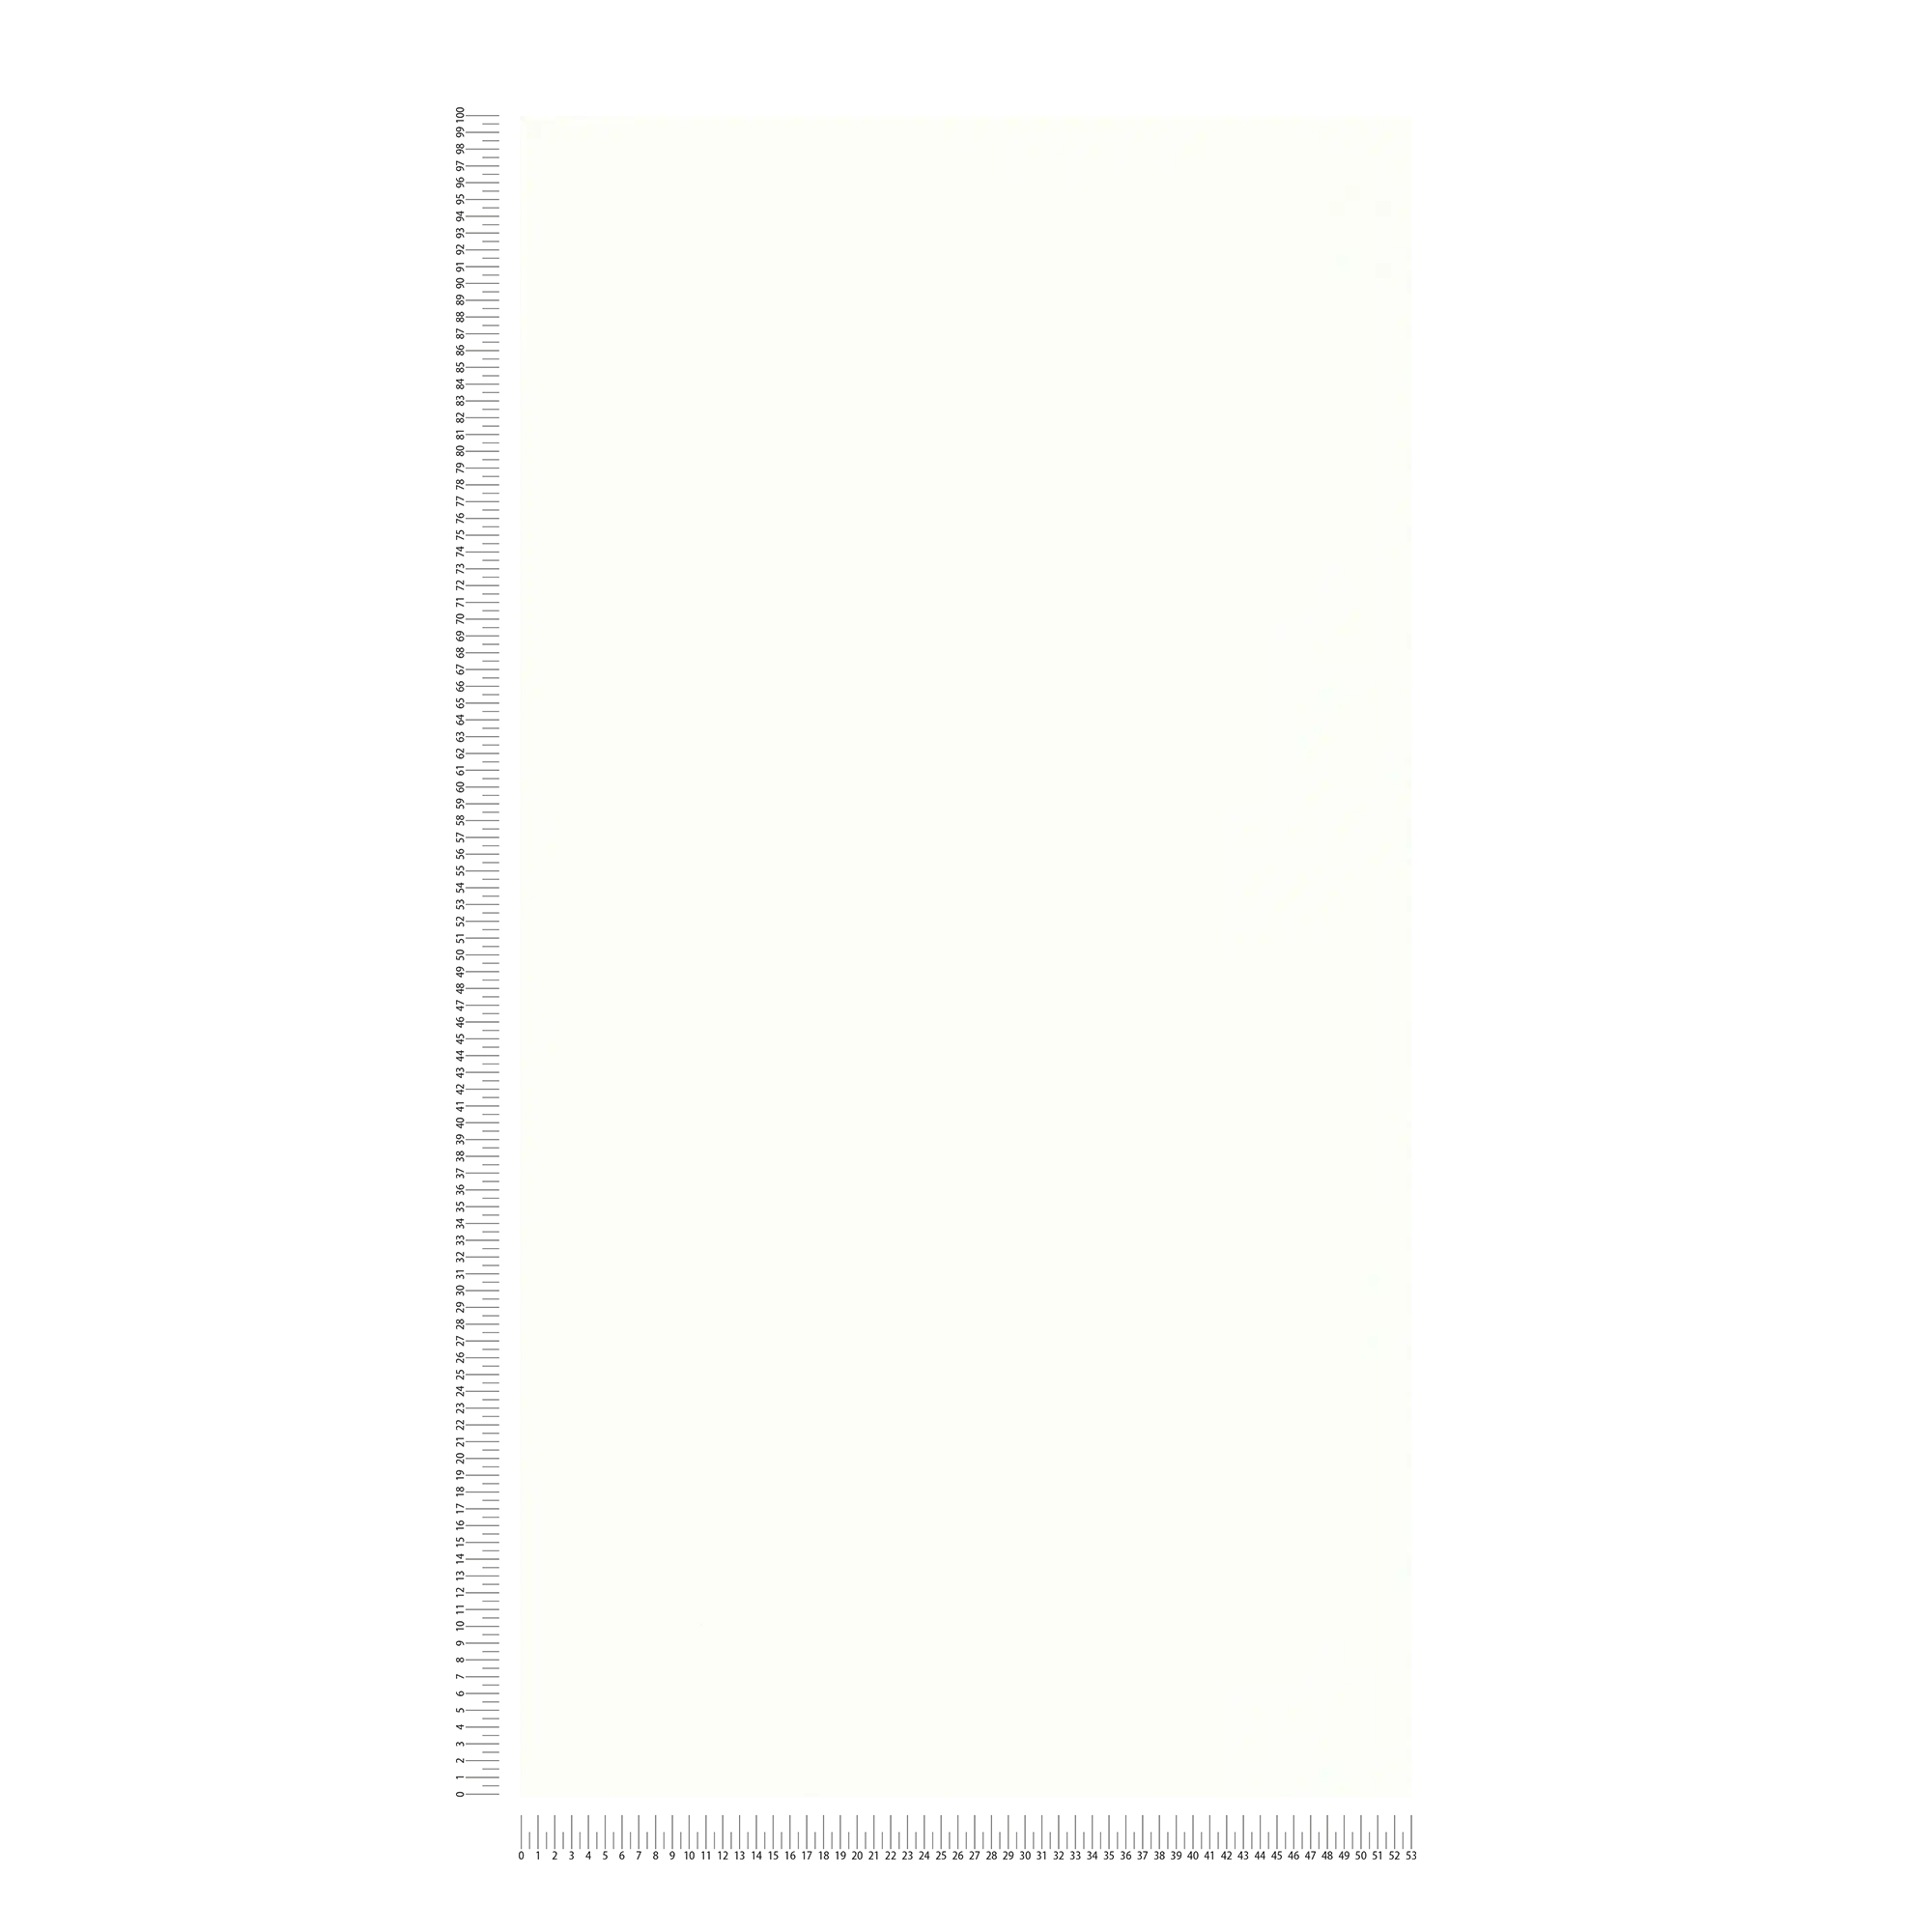             Carta da parati unitaria in stile scandinavo con motivo strutturato - crema, bianco
        